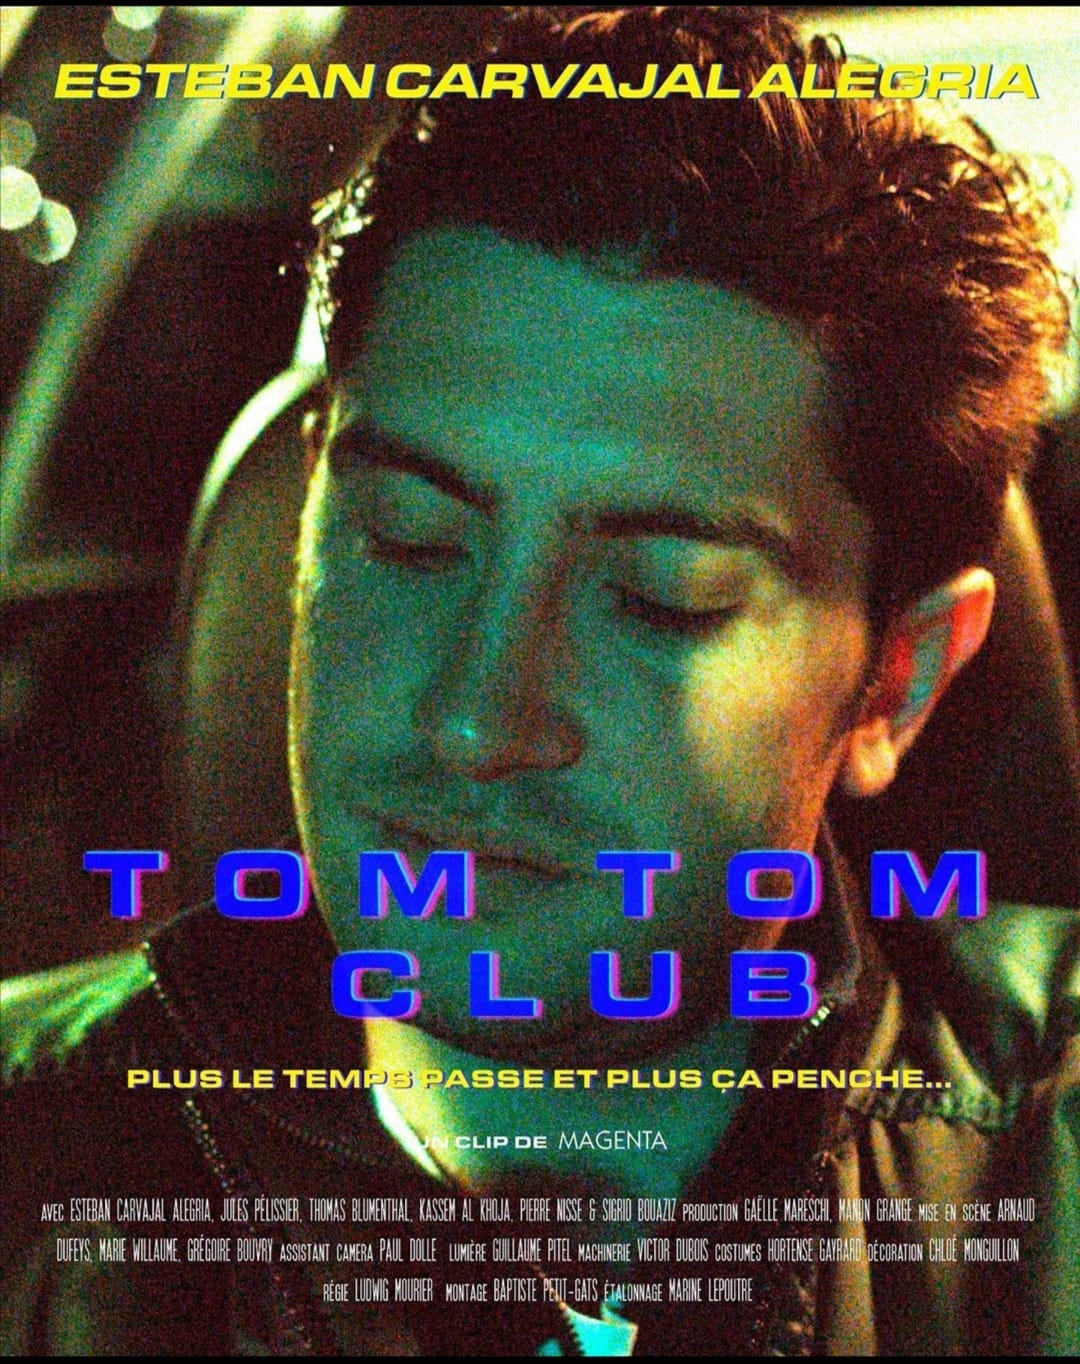 Affiche pour le clip " Tom Tom Club" du groupe Magenta présentant l'un des acteurs du clip, Esteban Carvajal Alegria. 